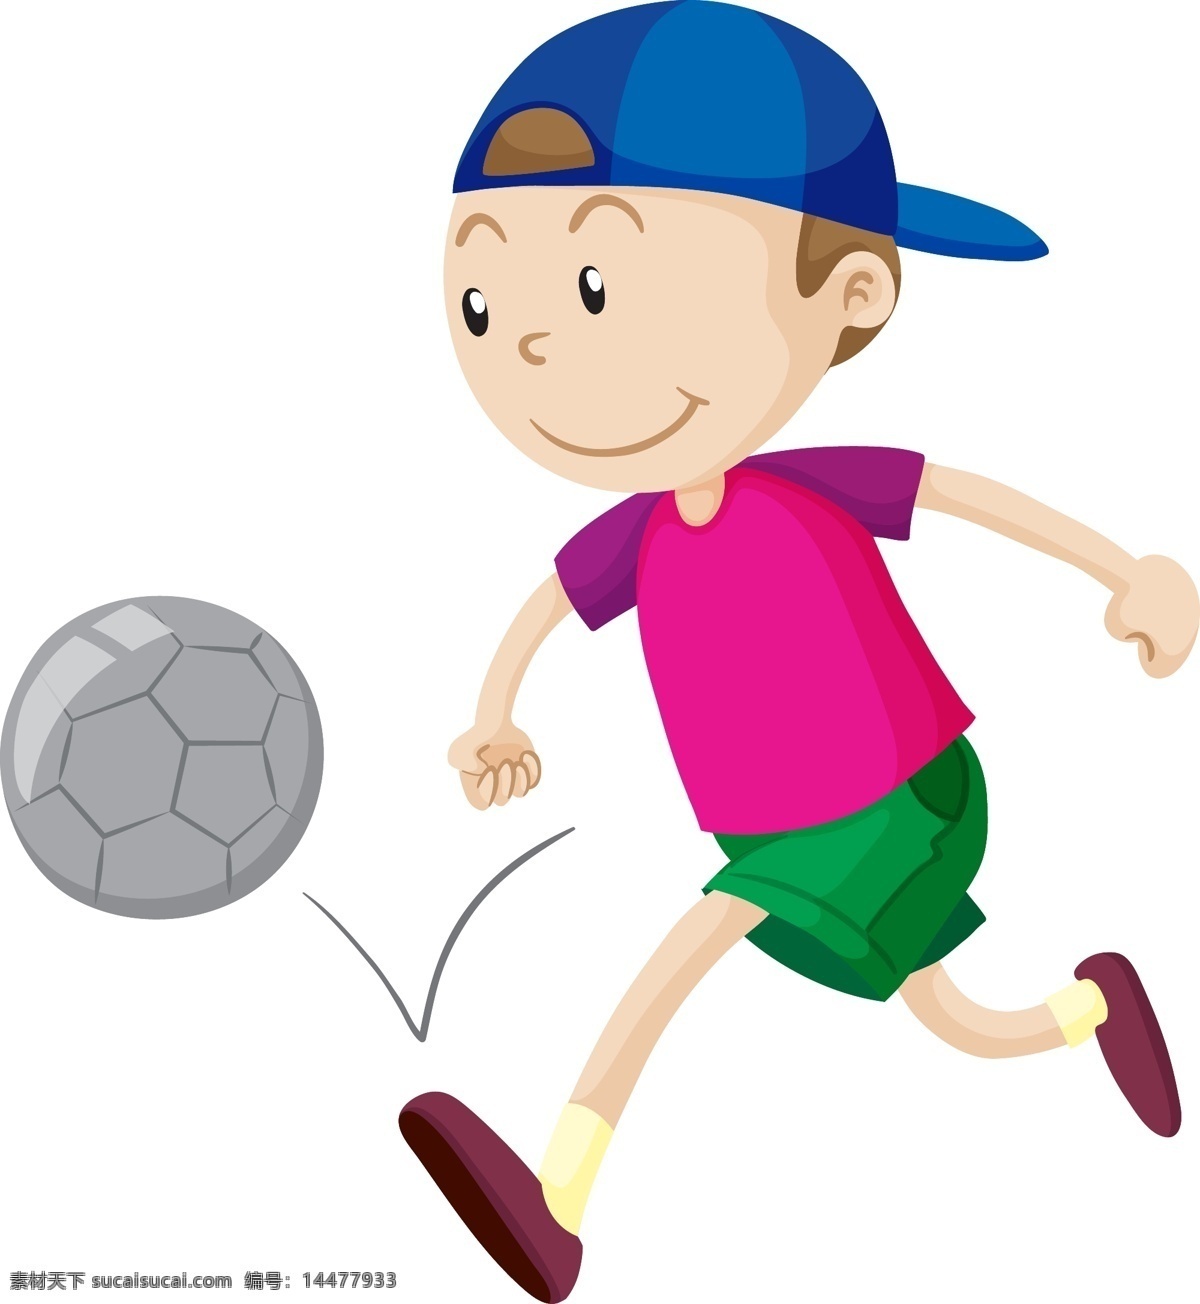 卡通足球儿童 足球儿童 足球 足球场 足球比赛 运动 体育 比赛 休闲娱乐体育 卡通设计